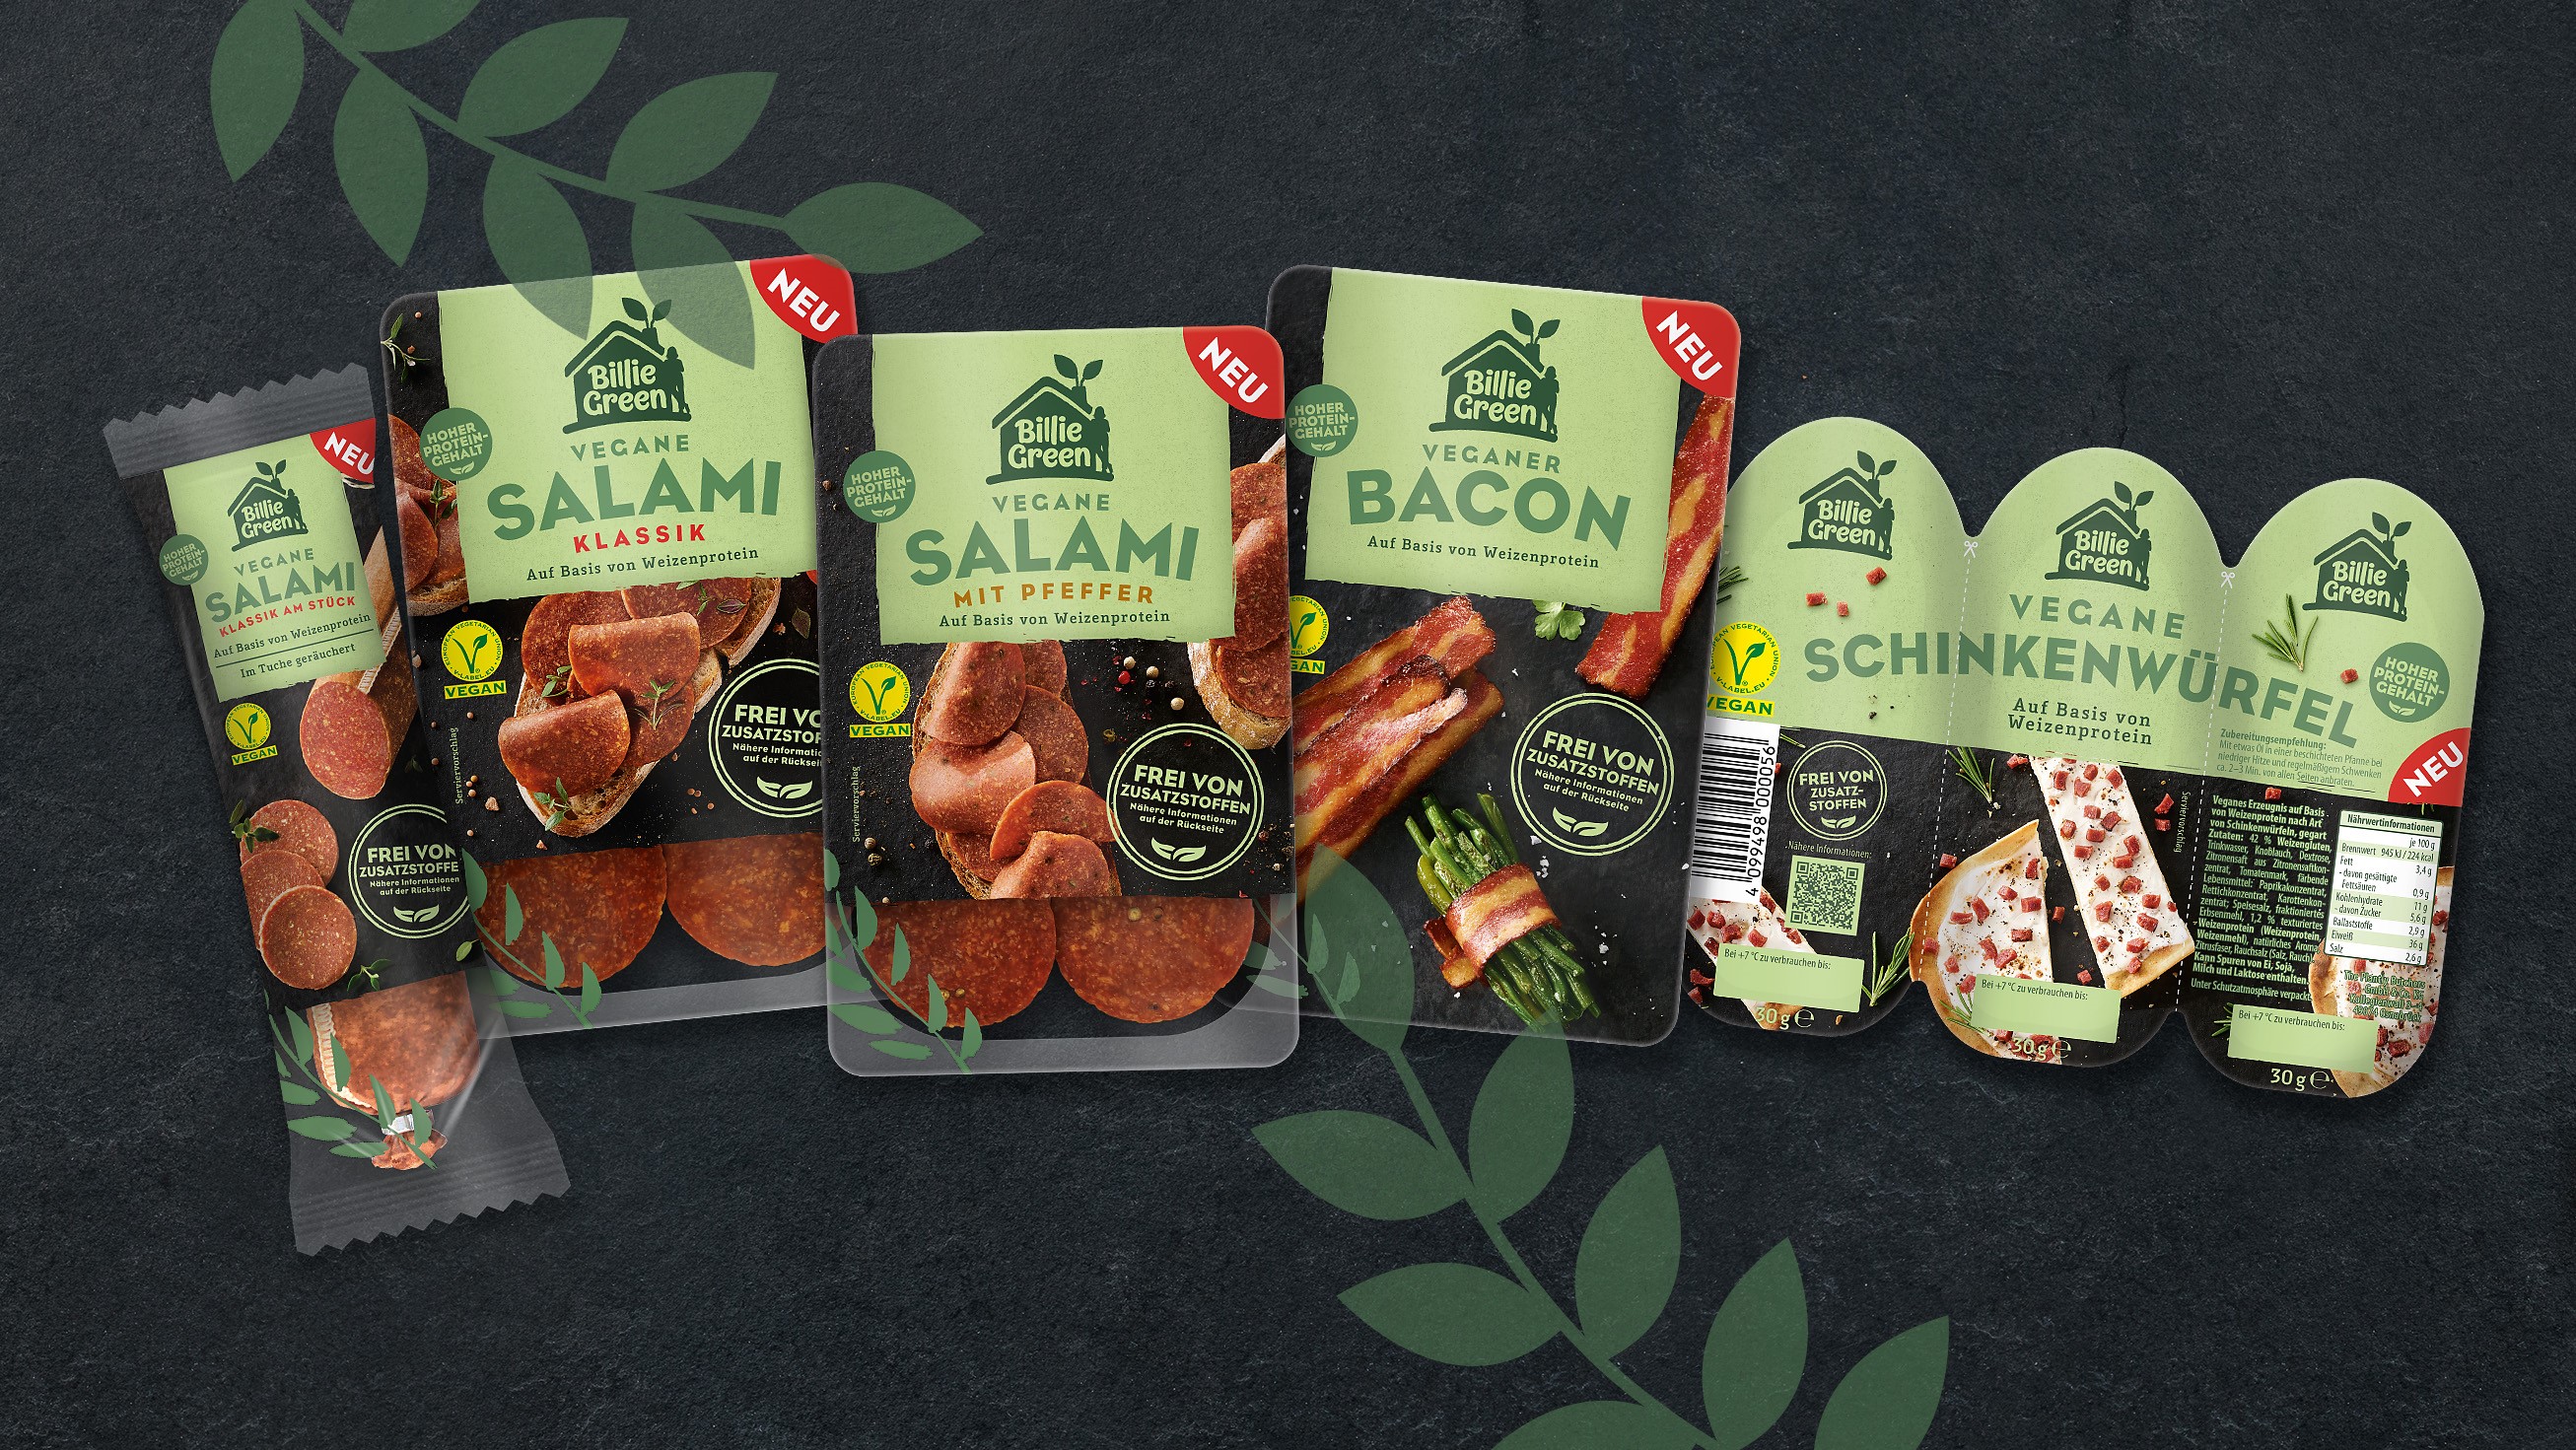 Billie Green launcht seine ersten veganen Produkte - Quelle: Billie Green/Infamily Foods/The Plantly Butchers 